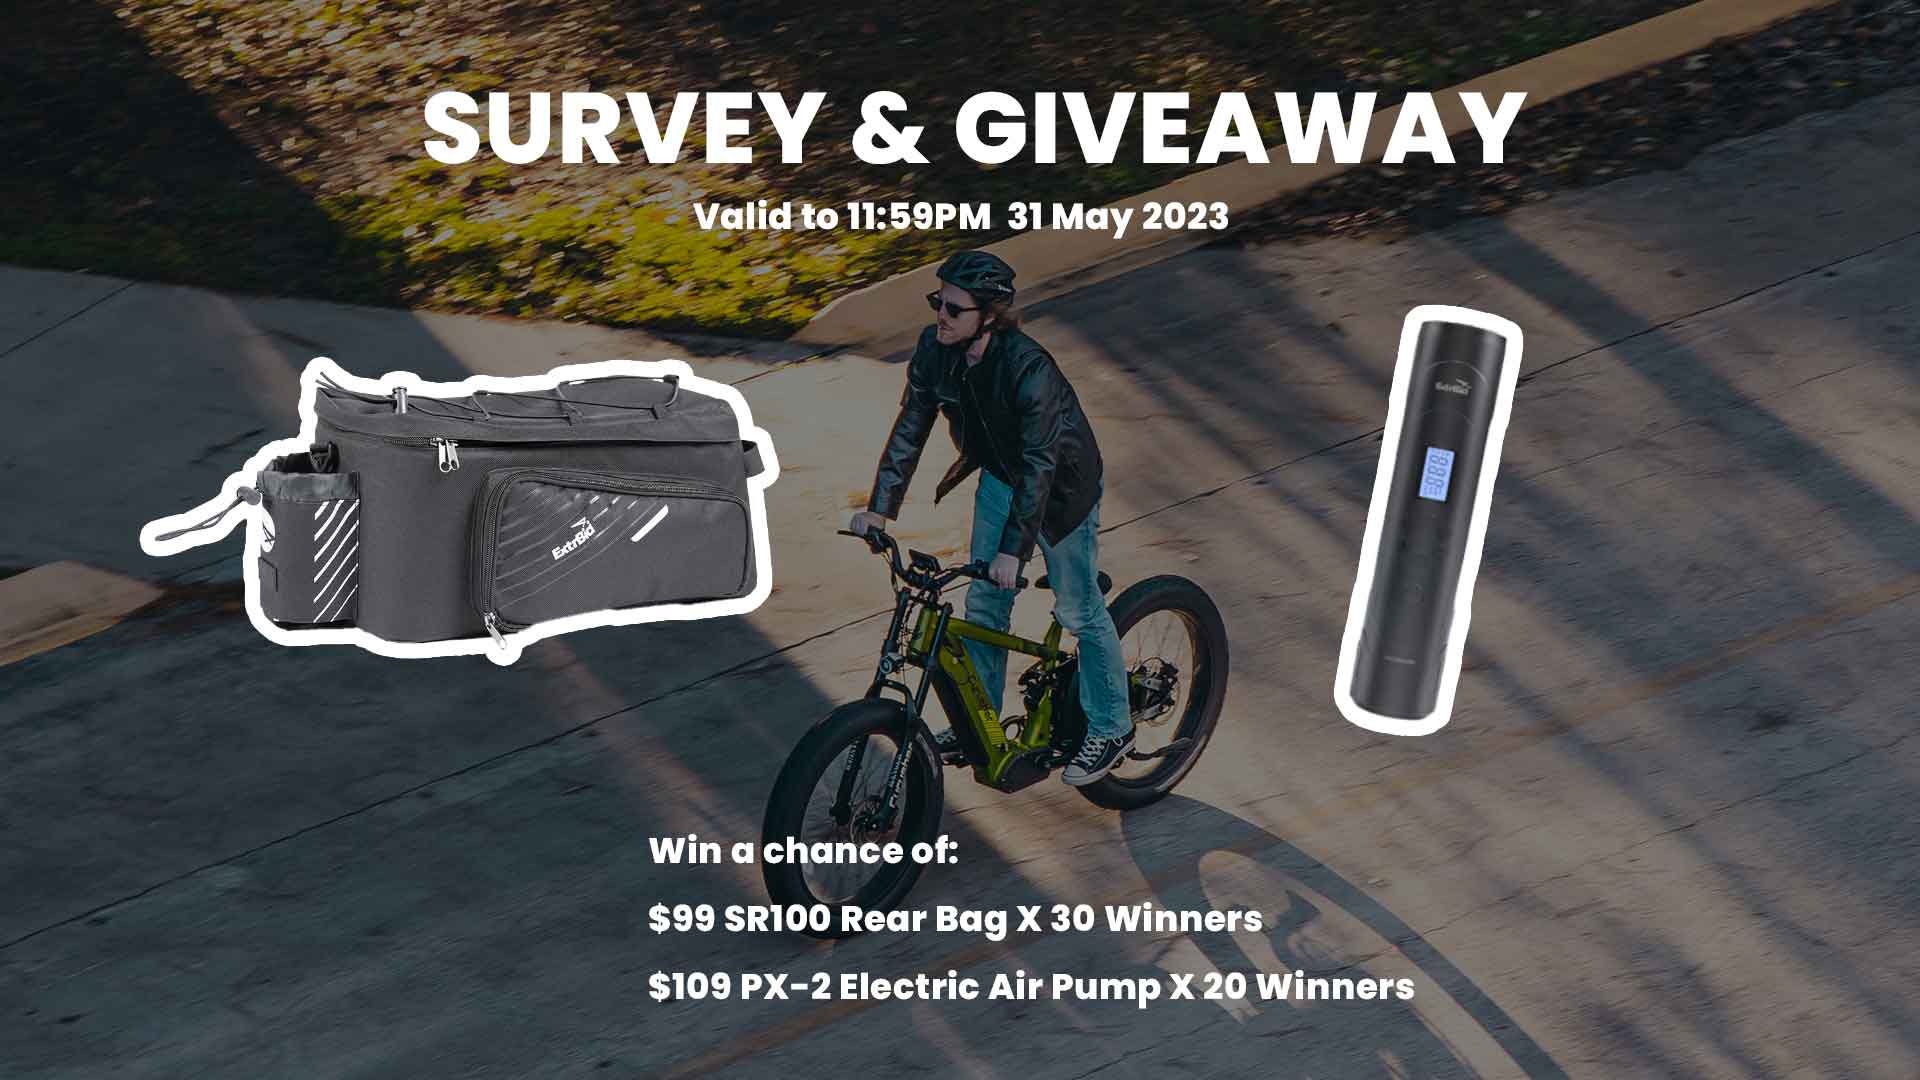 Share your E-bike experience and win an E-bike accessory bundle!